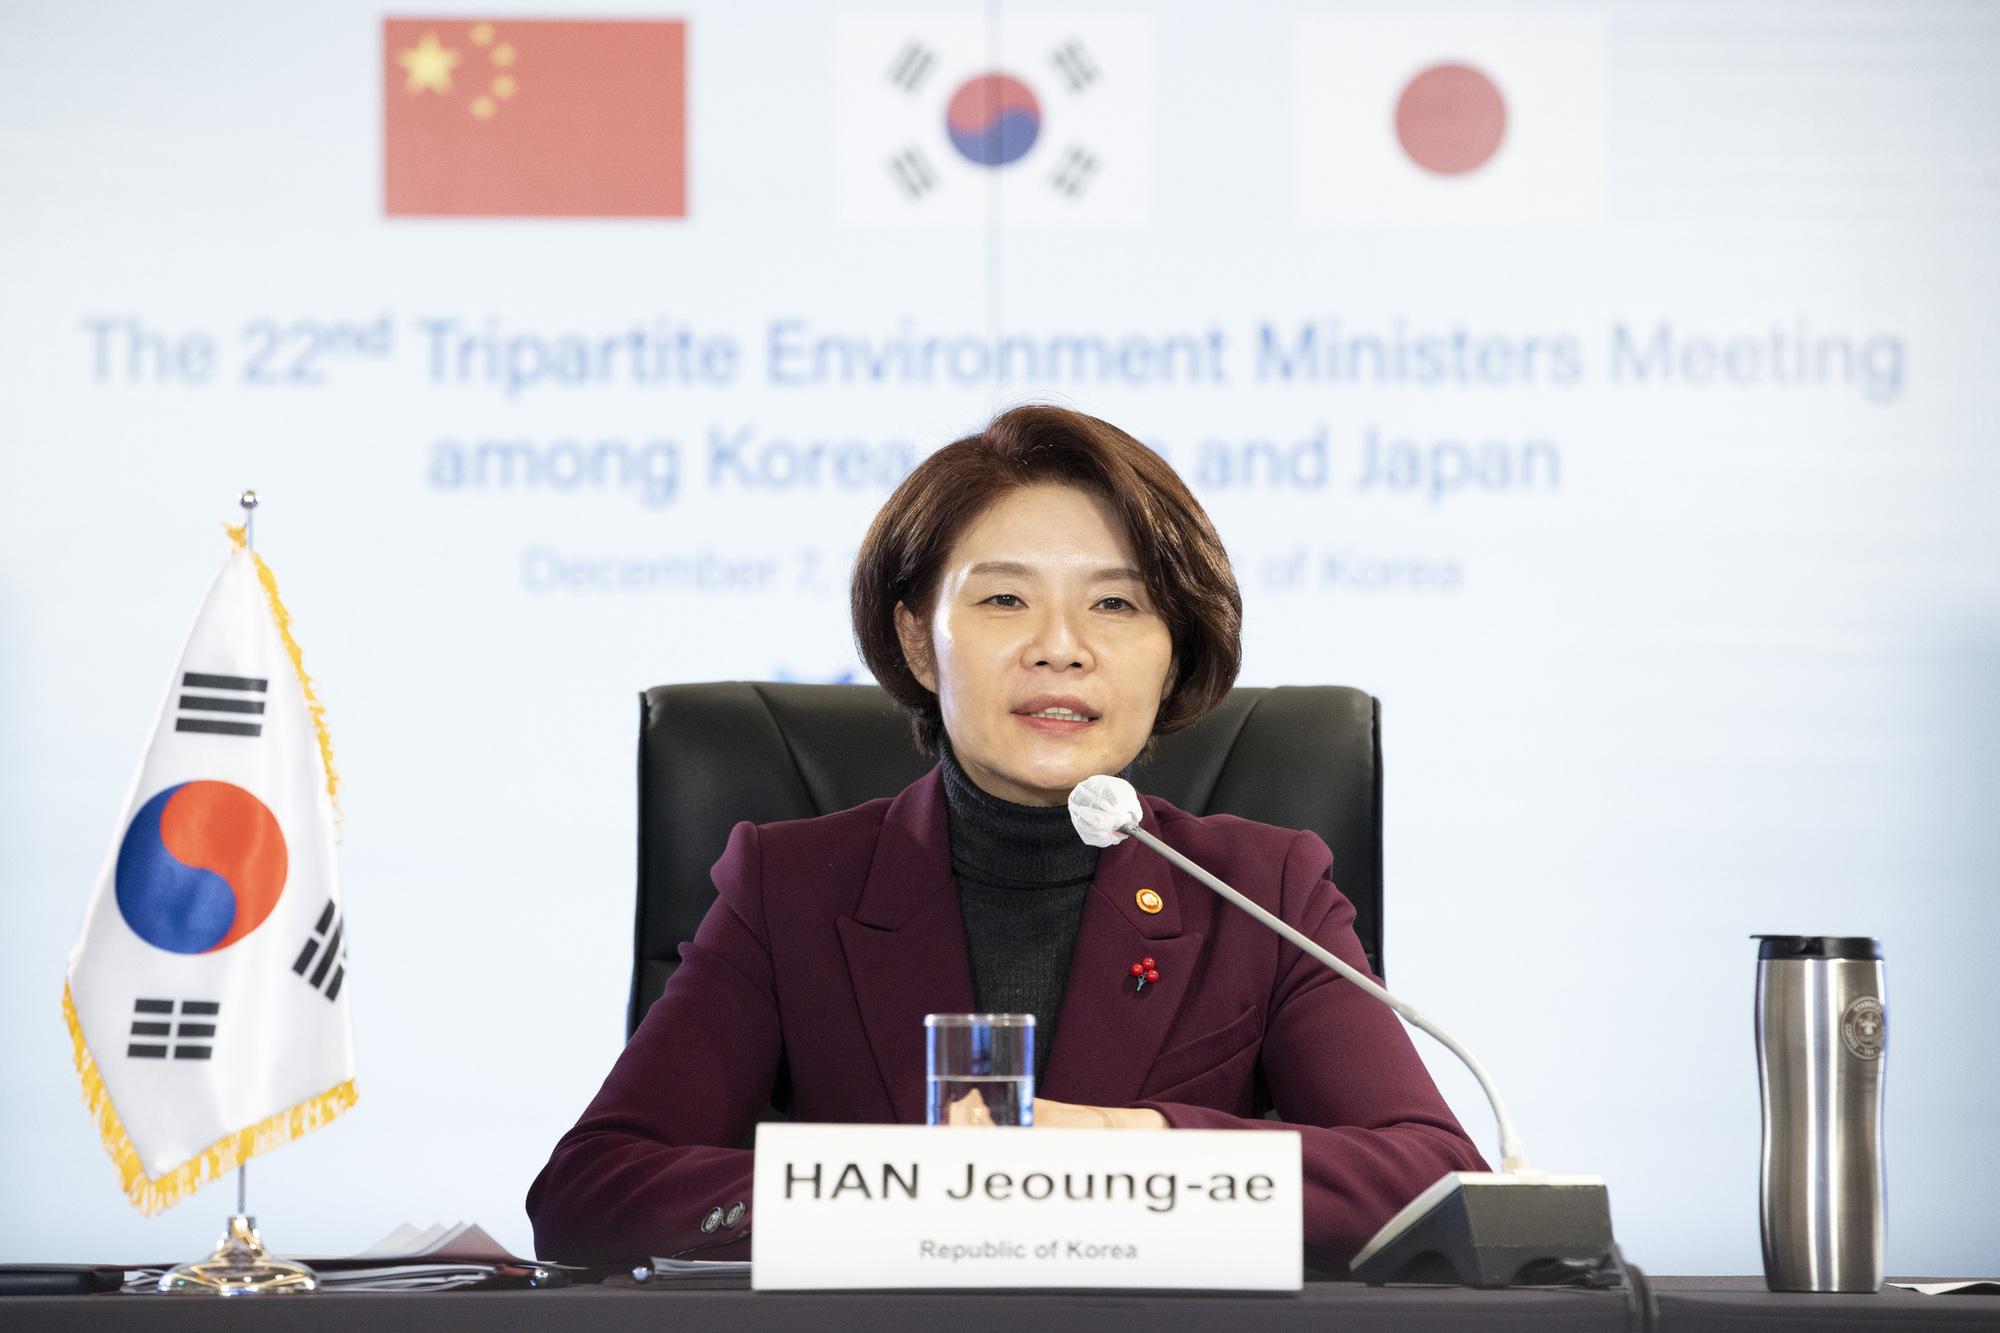 한정애 환경부장관이 한국의 환경정책에 대해 발언하고 있다.